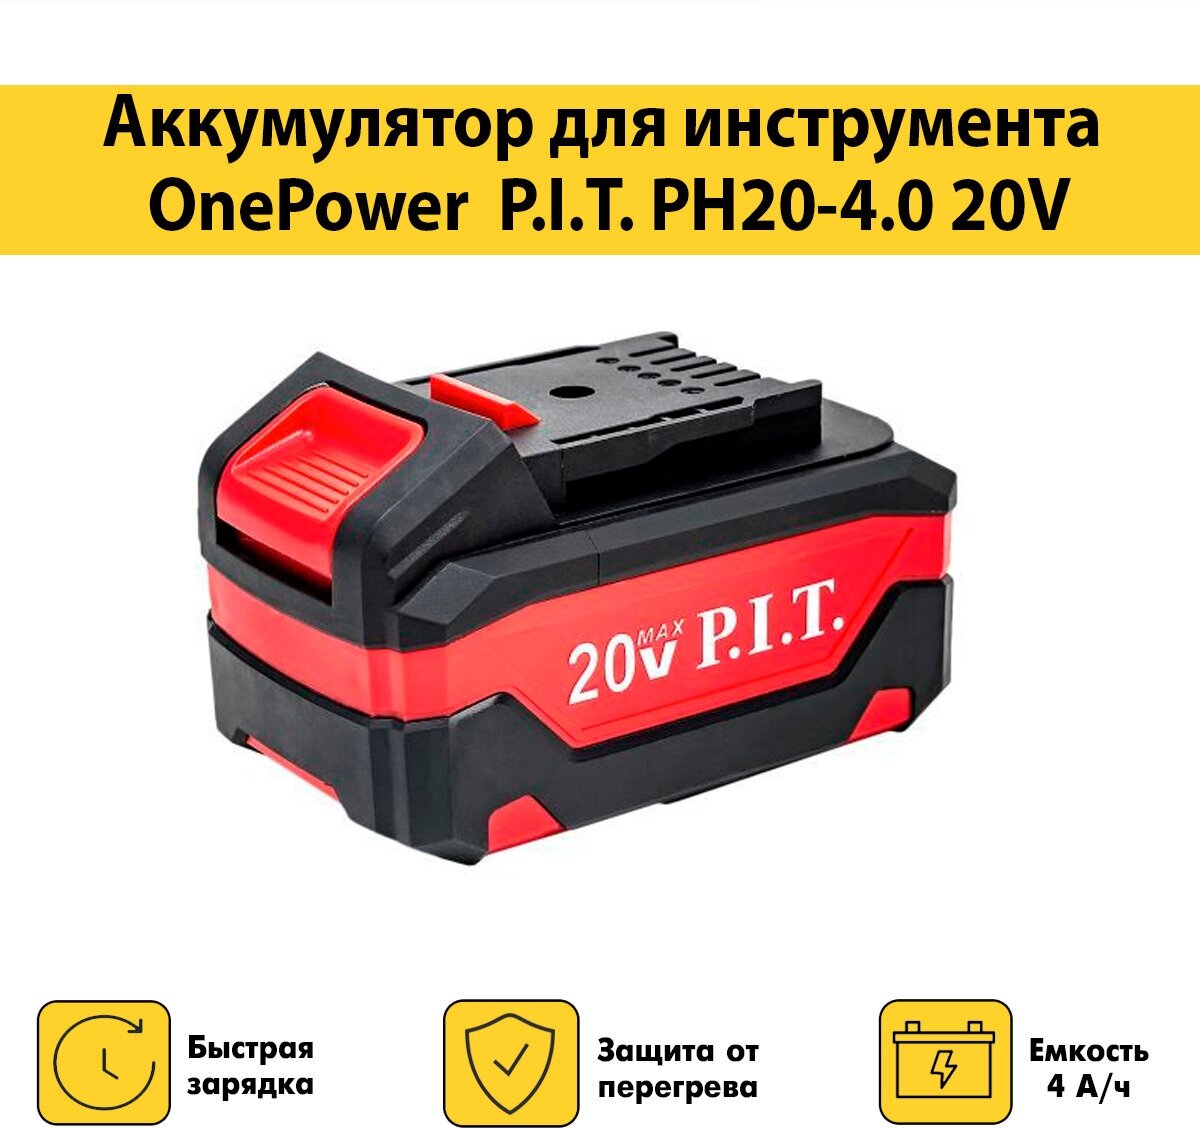 Аккумулятор P.I.T. OnePower PH20-4.0 20В, 4Ач, Li-Ion